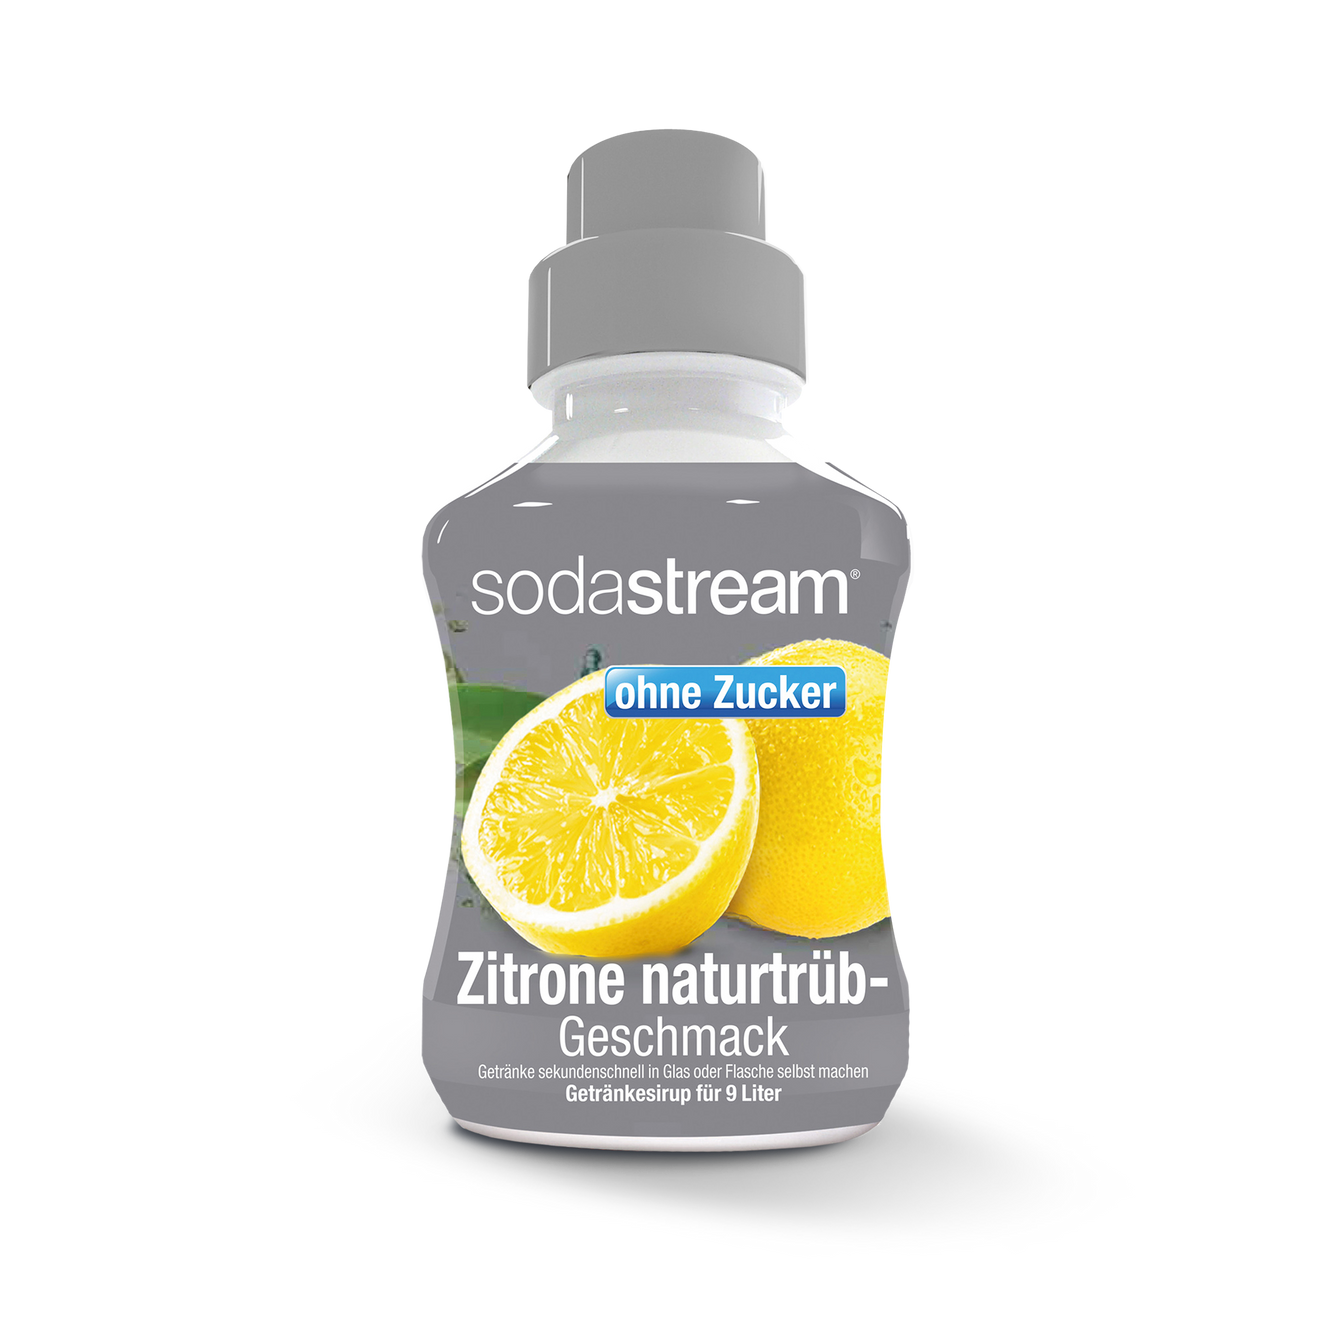 SodaStream Sirup Zitrone-naturtrüb-Geschmack ohne Zucker